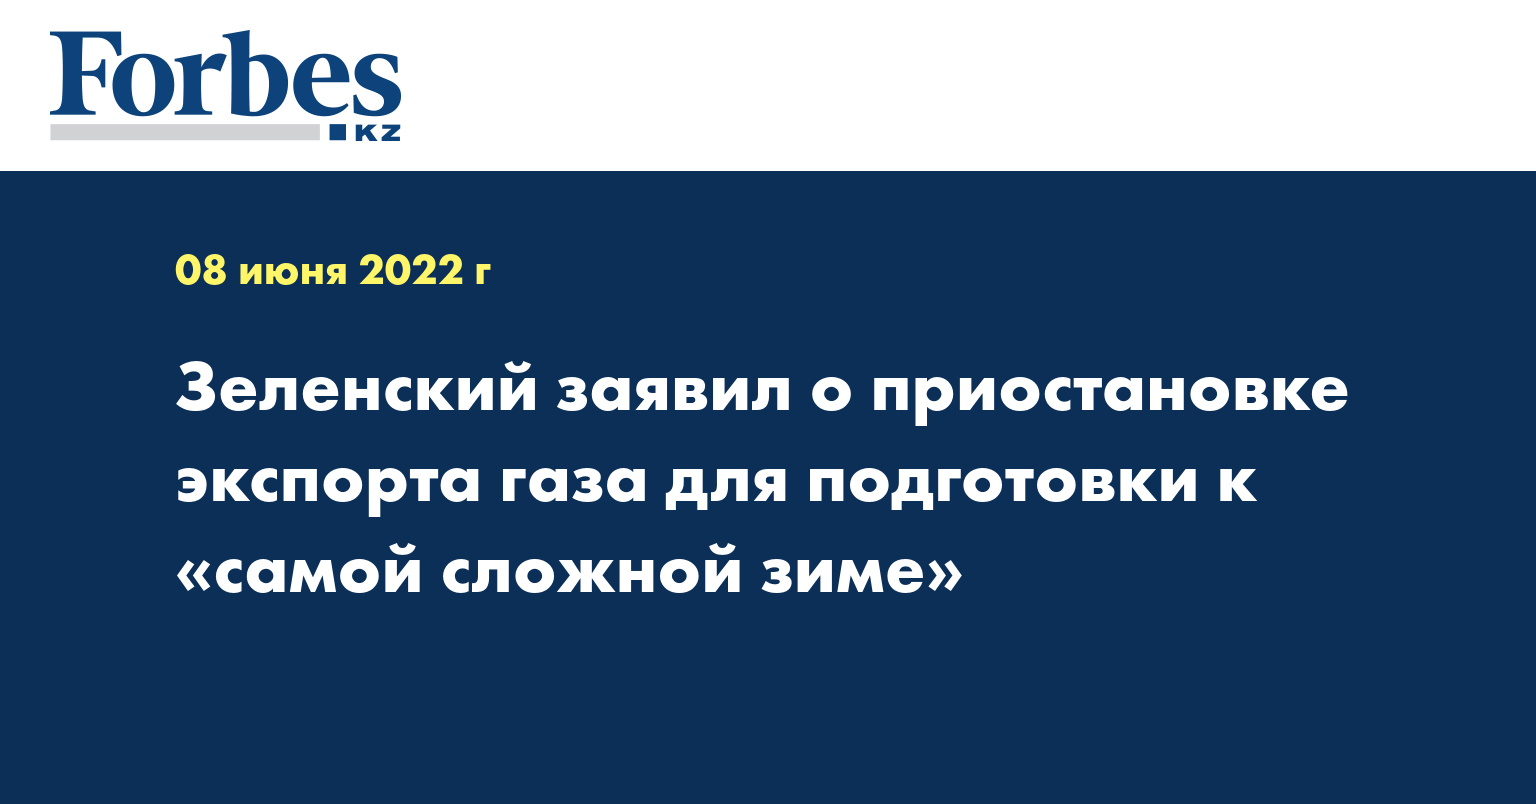 Зеленский заявил о приостановке экспорта газа для подготовки к «самой сложной зиме»